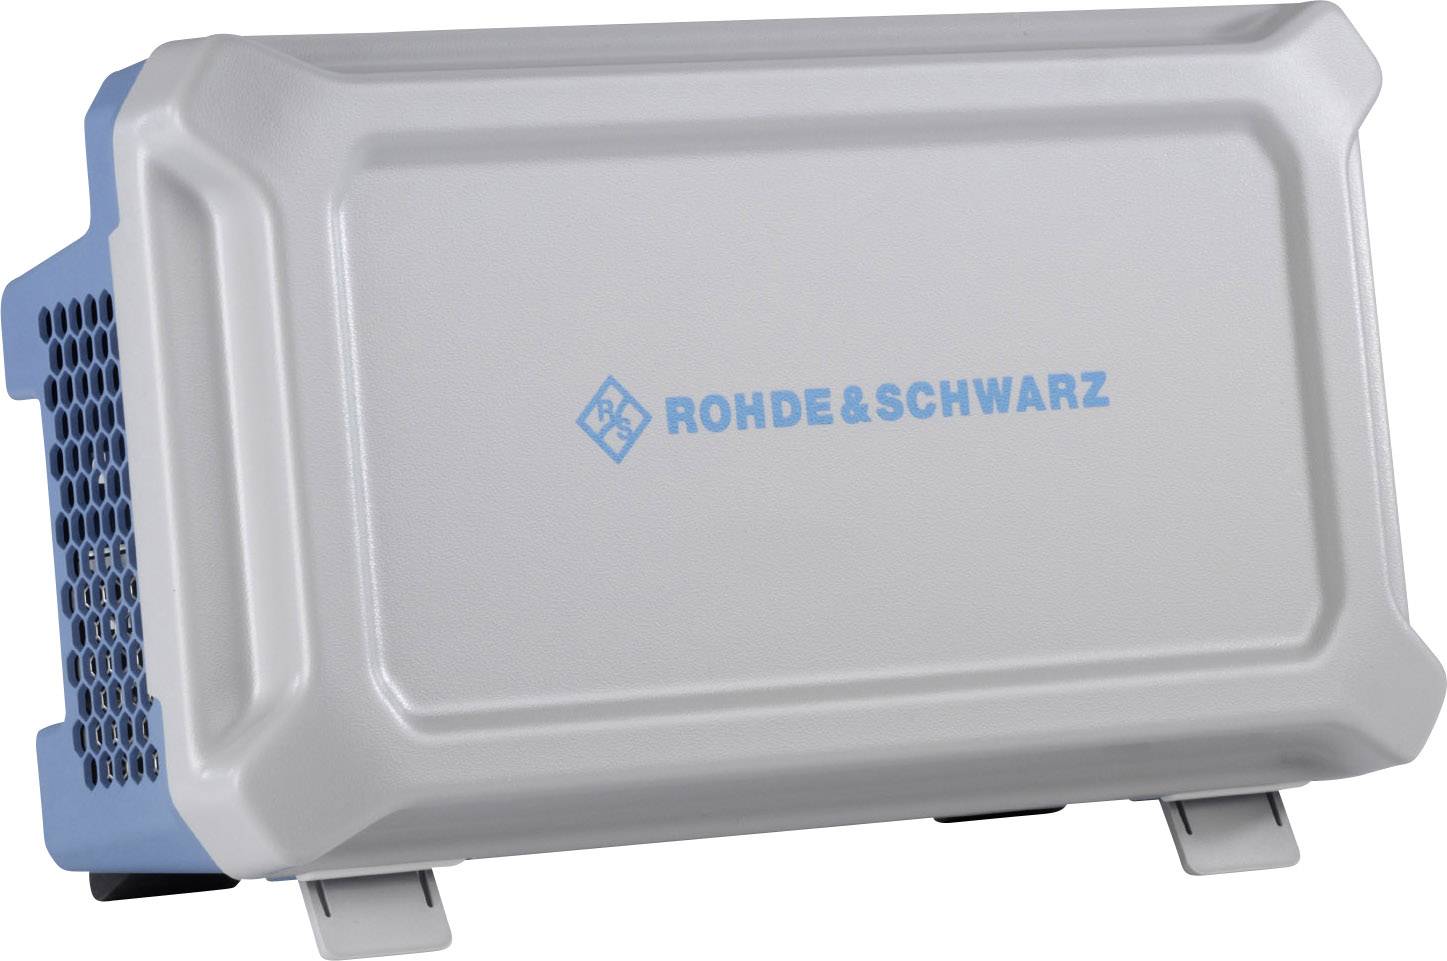 ROHDE & SCHWARZ 1333.1728.02 RTB-Z1 Erweiterungsmodul RTB-Z1 Front Cover für RTB-Serie,